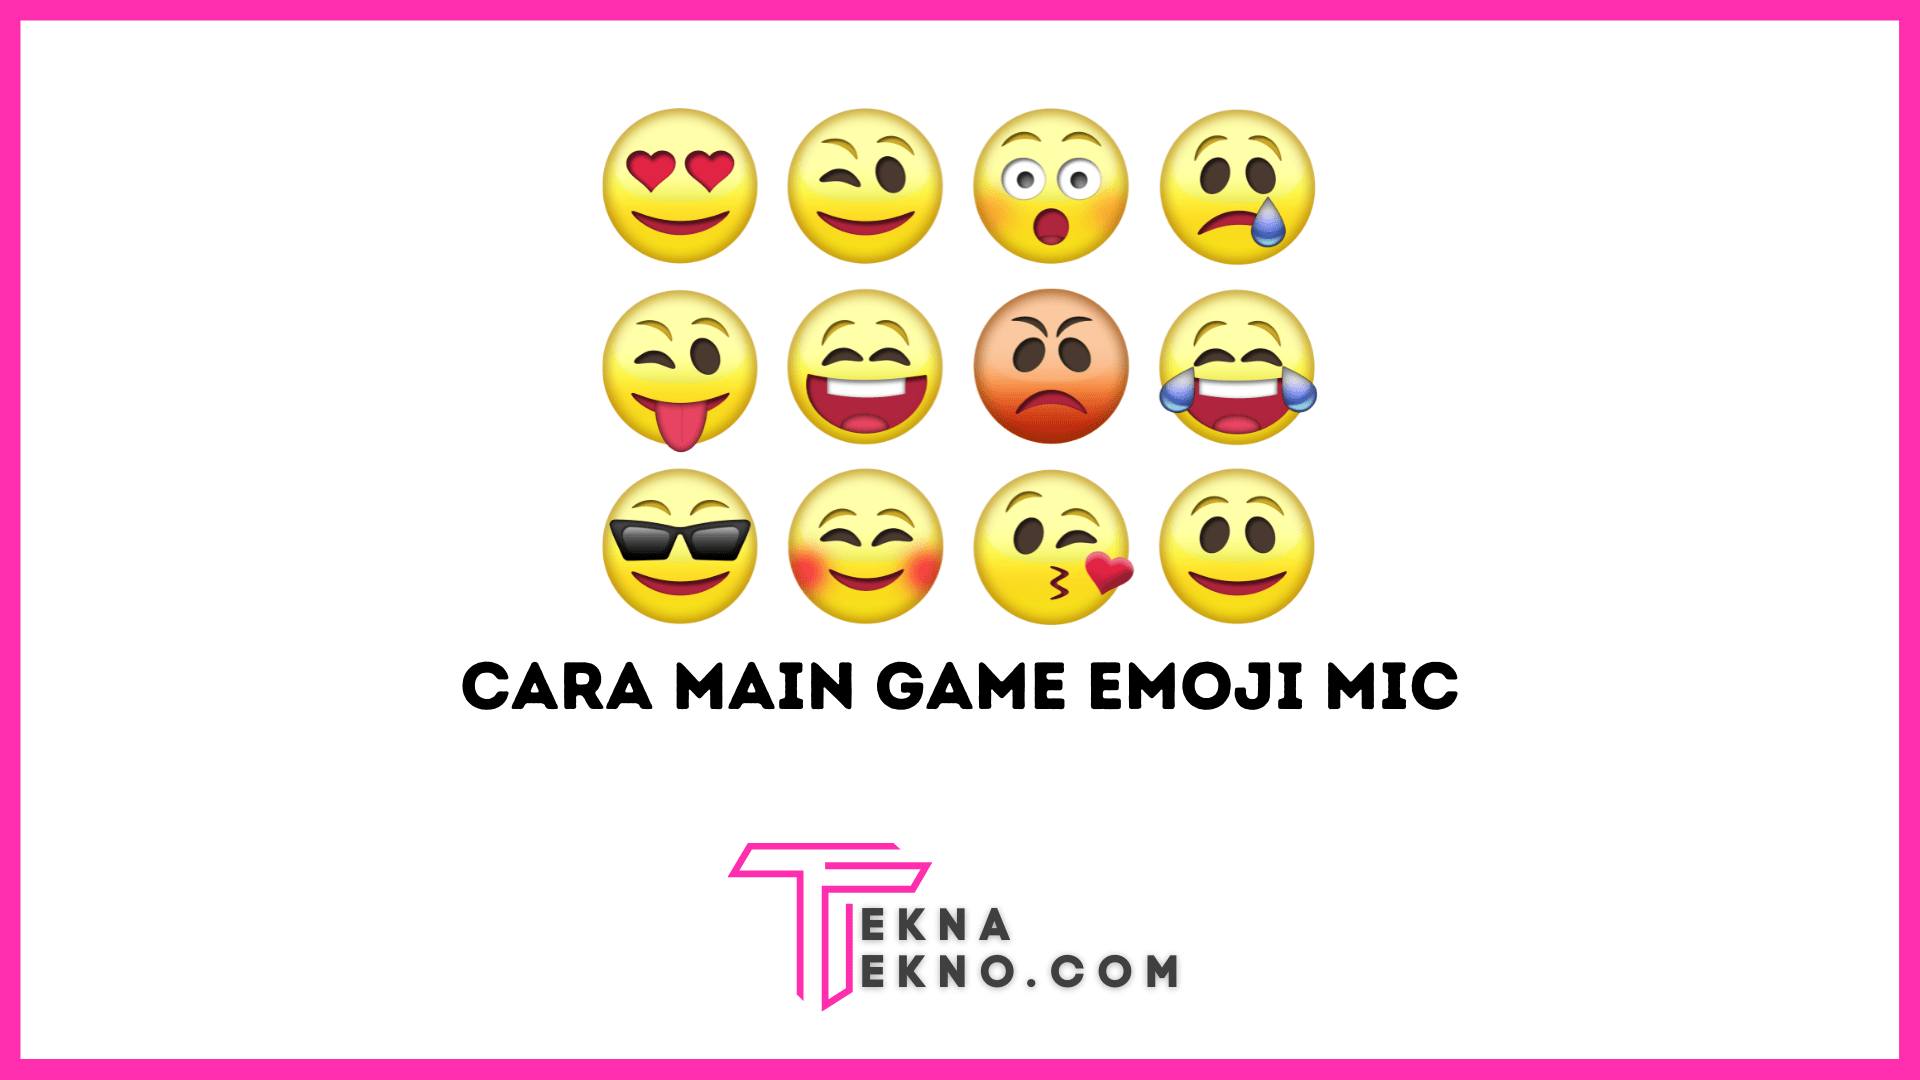 Cara Main Game Emoji Mic yang Viral di Tiktok